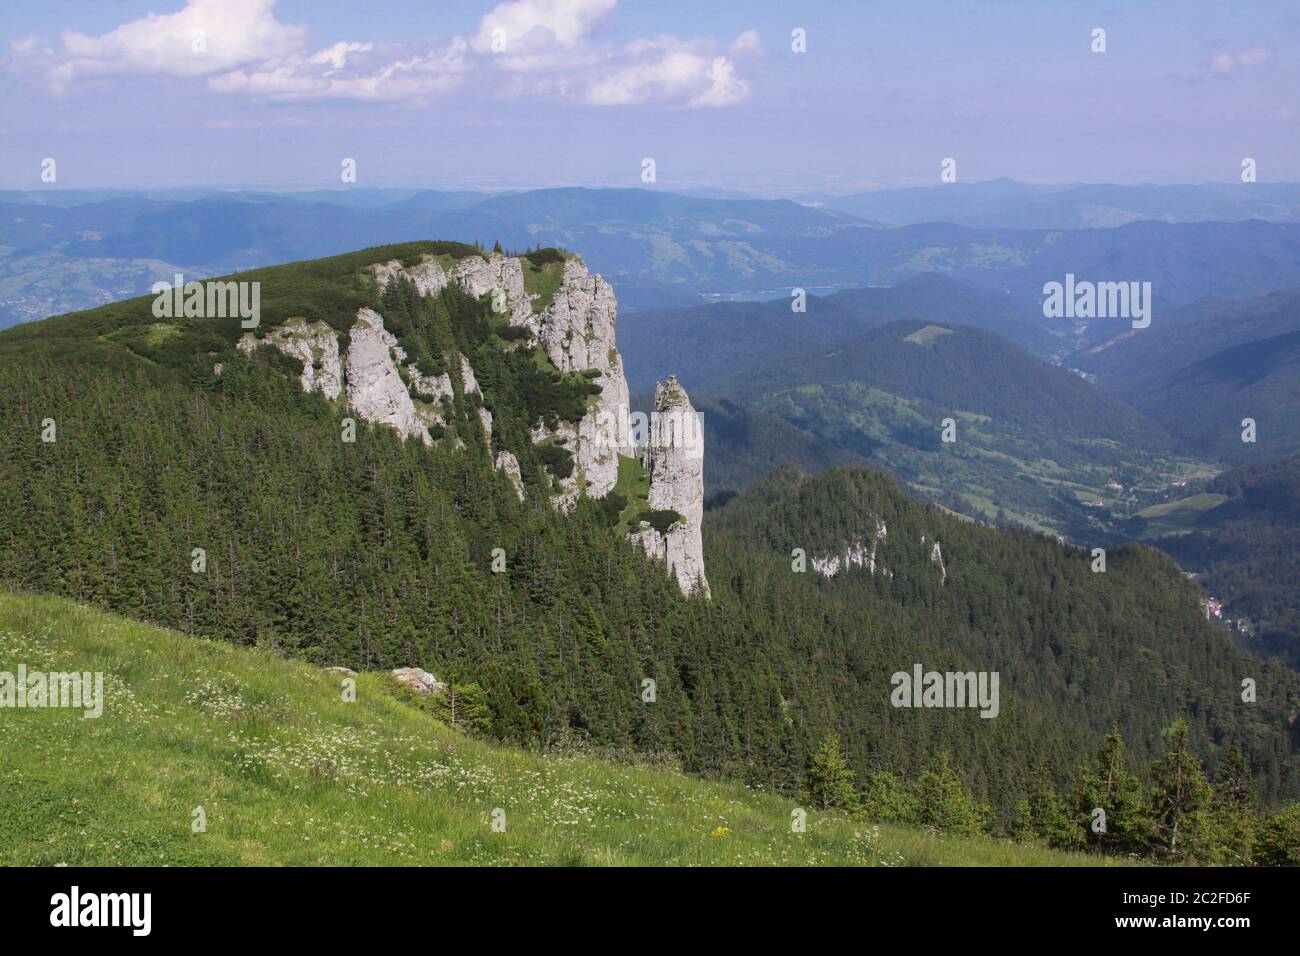 Das Ceahlau-Massiv ist einer der schönsten Berge Rumäniens. Sie würden es ein sehr gutes Wanderziel finden, da es markierte Wanderwege gibt Stockfoto